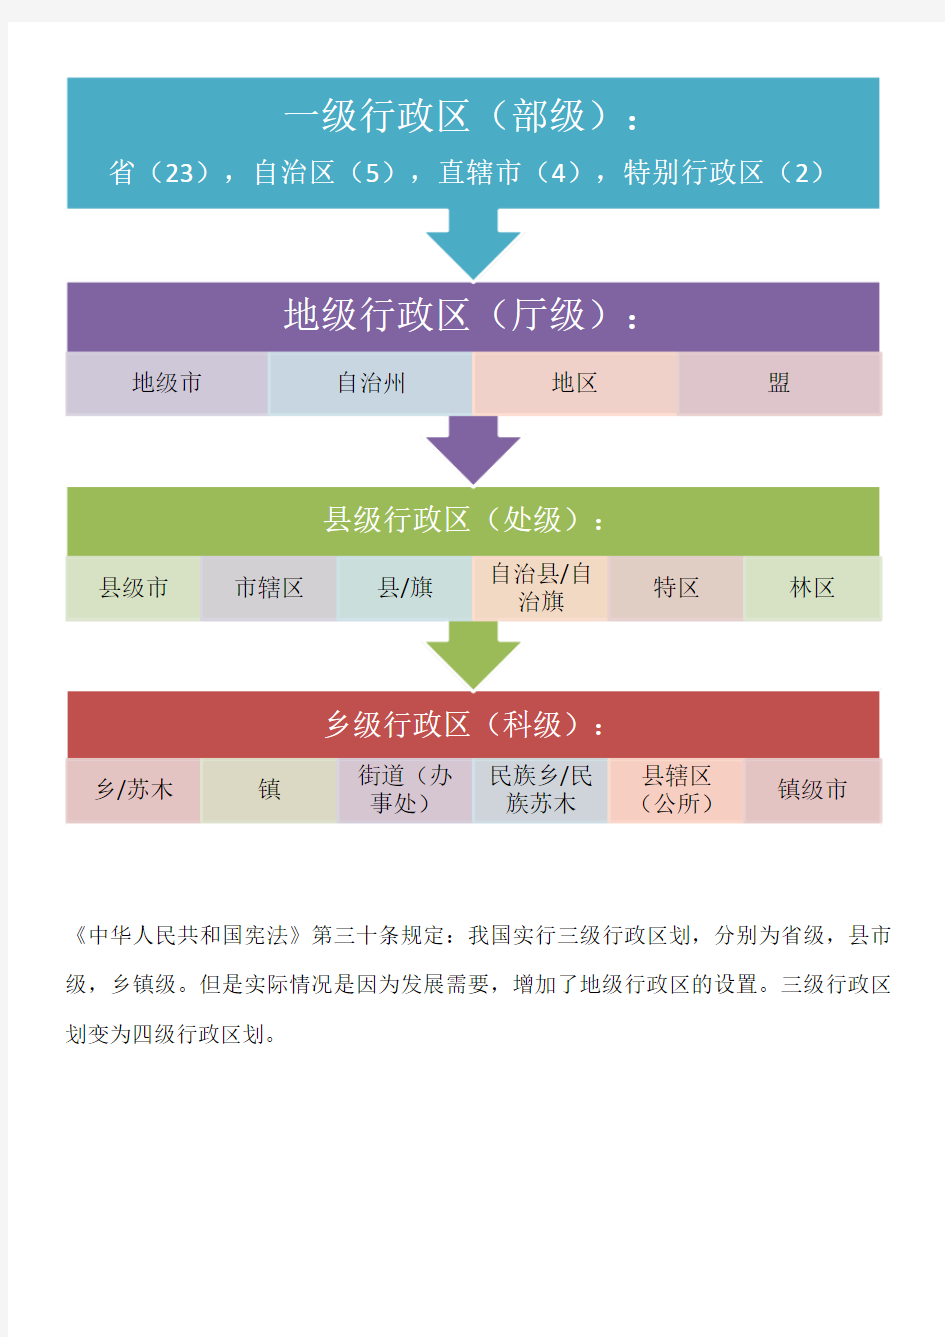 中国行政区划等级表